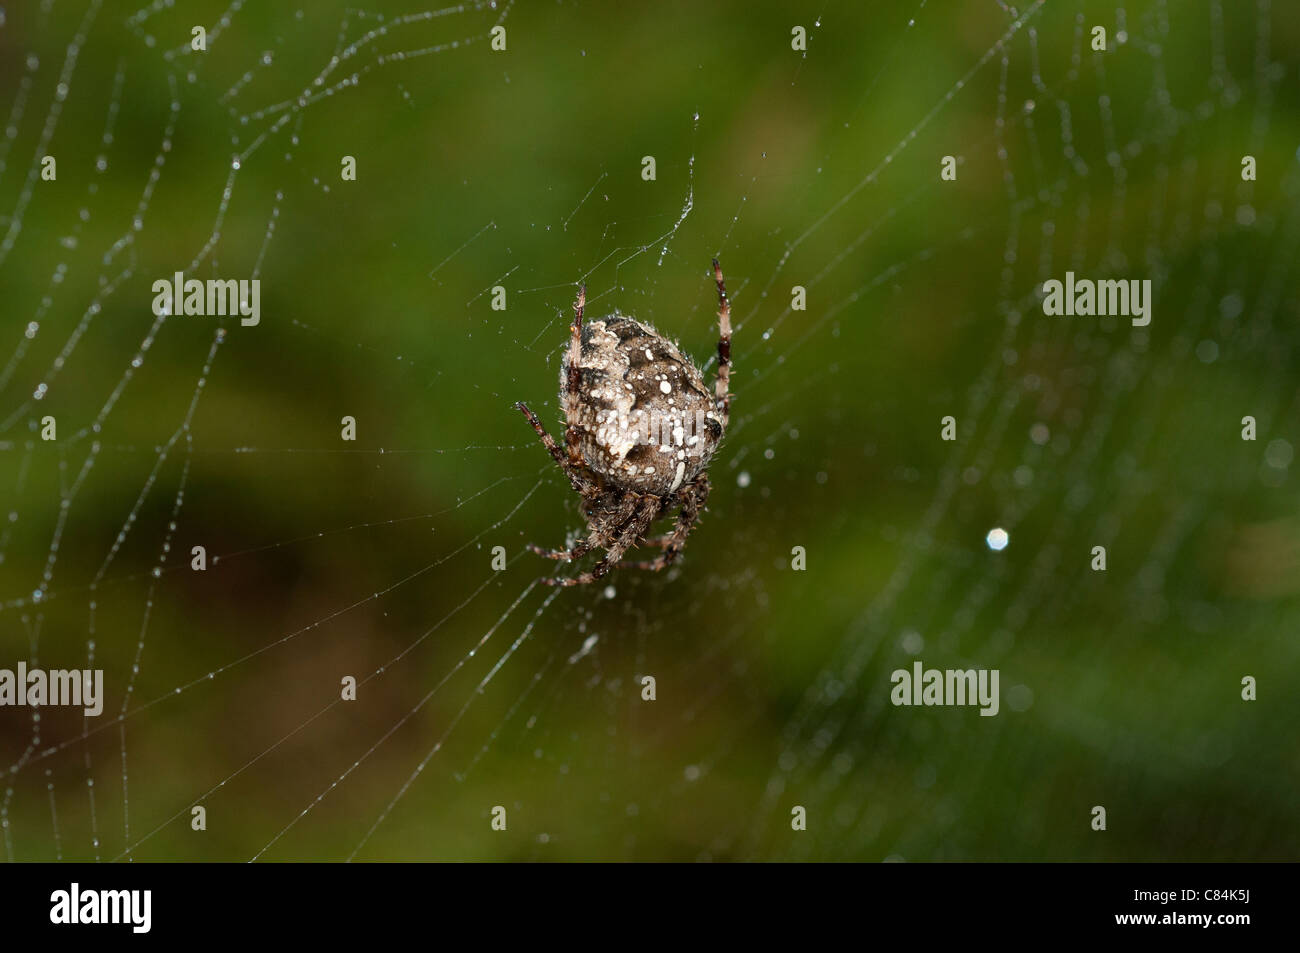 Female garden spider in web. Stock Photo